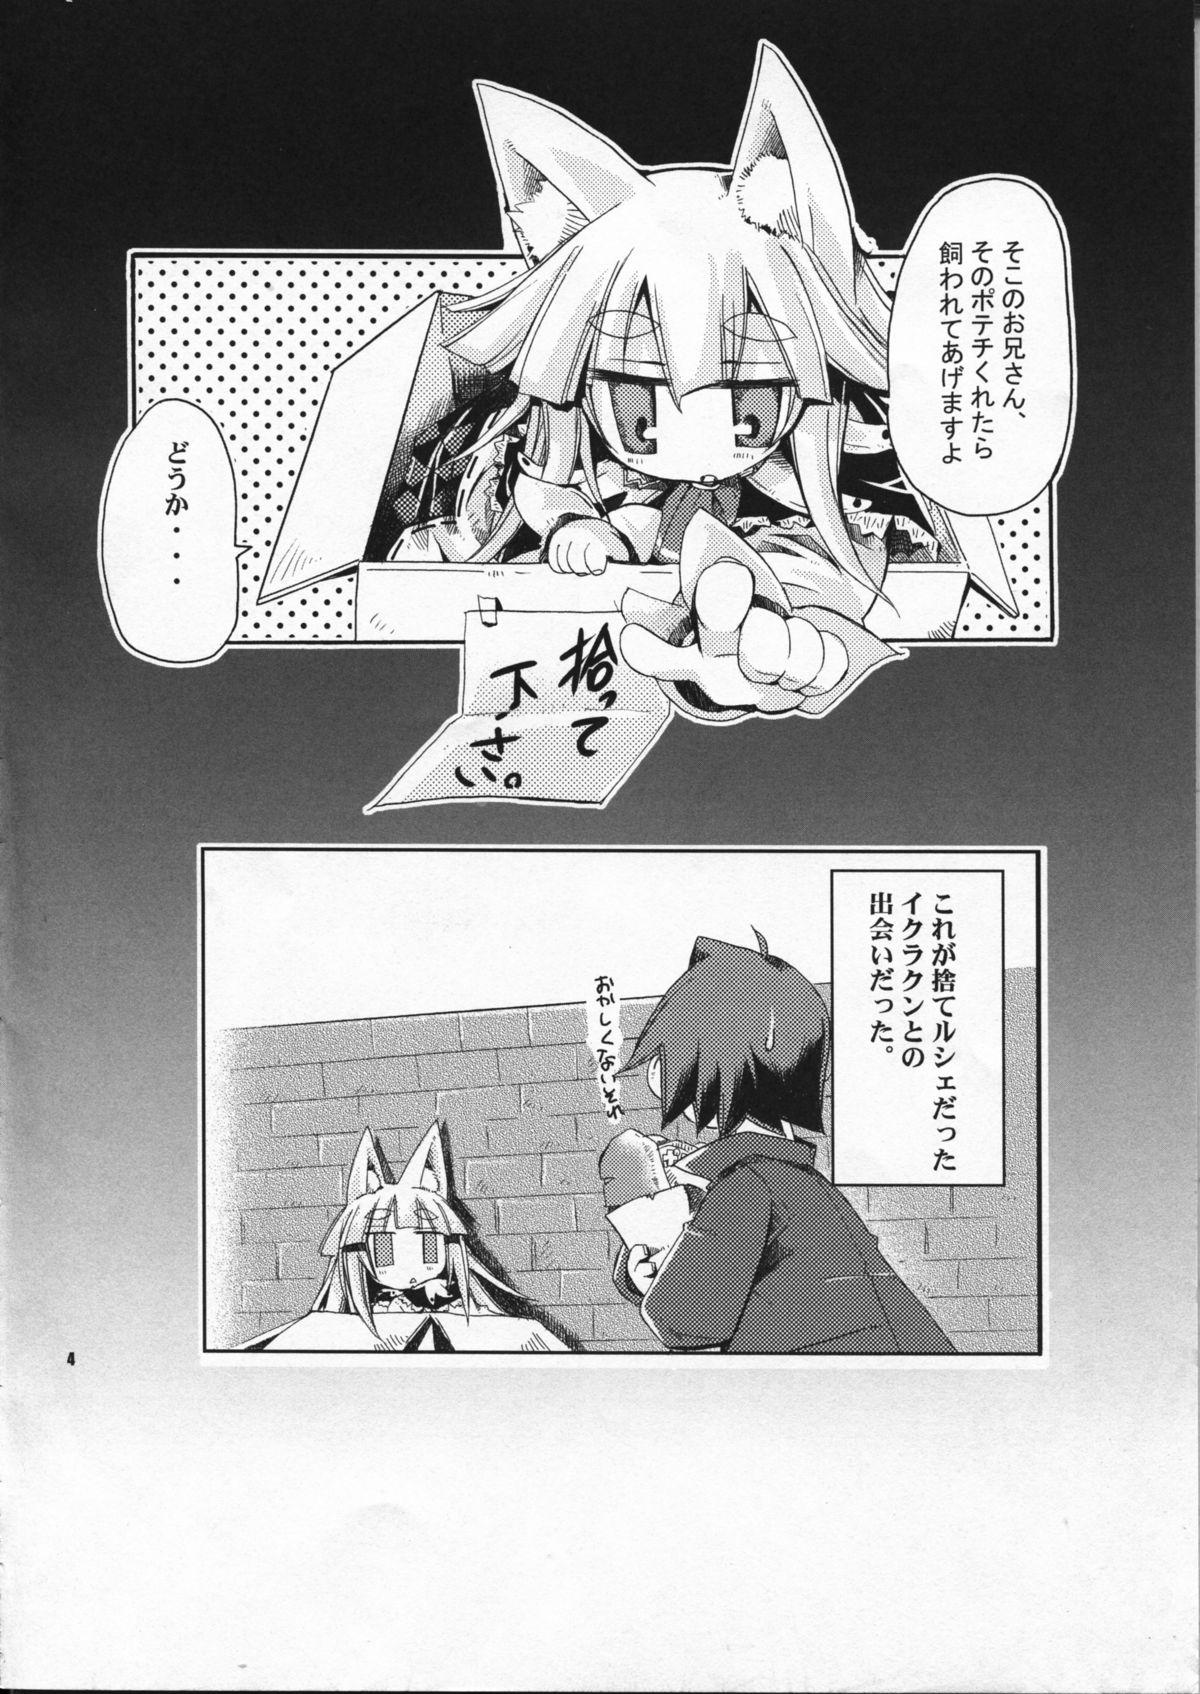 Longhair Wagaya no Ikura no Kaikata - 7th dragon Milf Fuck - Page 4